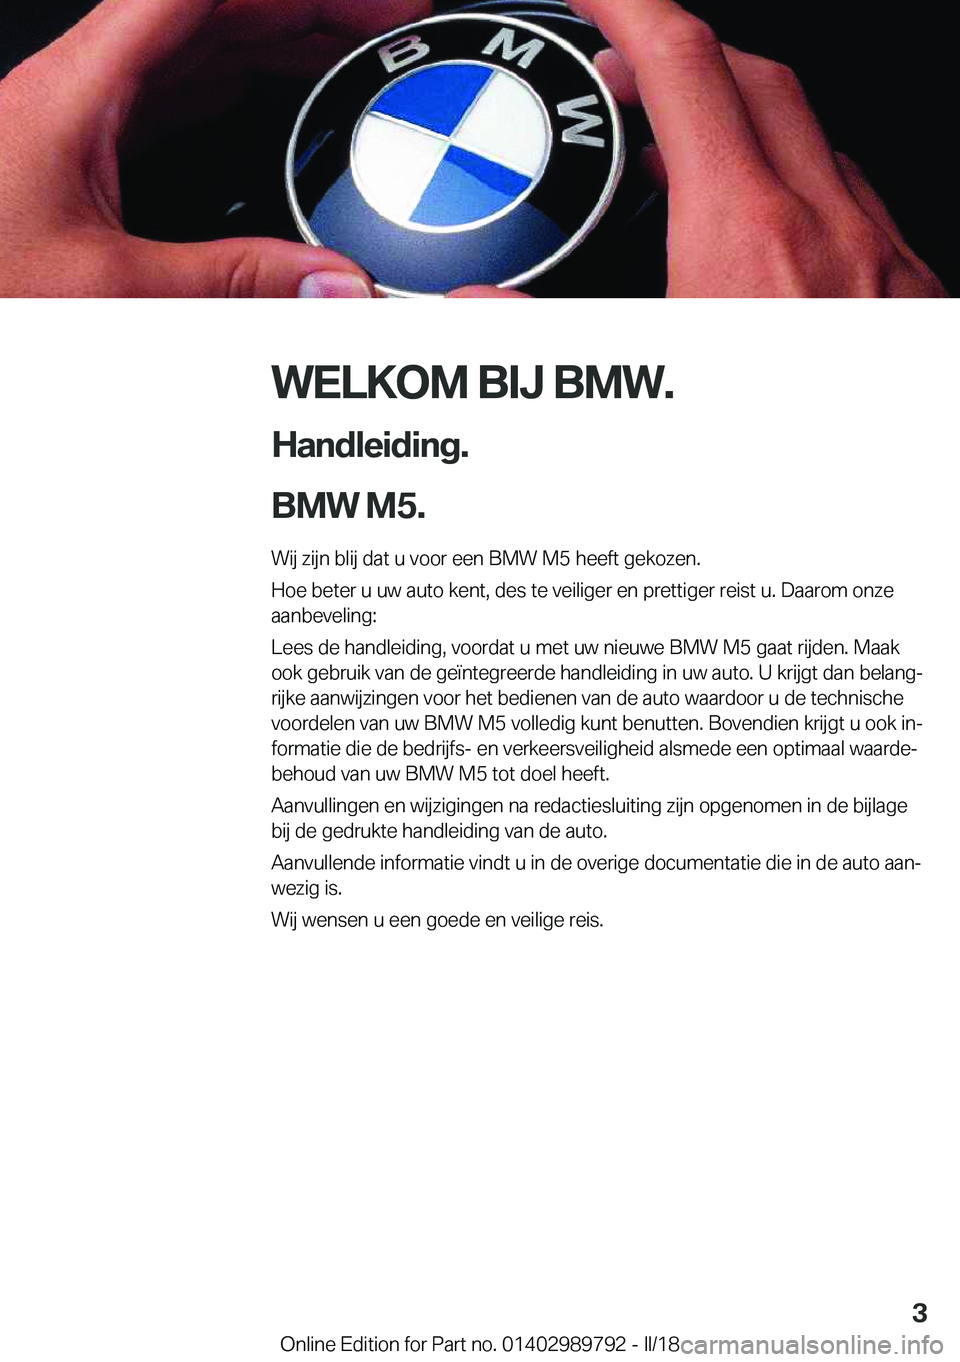 BMW M5 2018  Instructieboekjes (in Dutch) �W�E�L�K�O�M��B�I�J��B�M�W�.
�H�a�n�d�l�e�i�d�i�n�g�.
�B�M�W��M�5�. �W�i�j� �z�i�j�n� �b�l�i�j� �d�a�t� �u� �v�o�o�r� �e�e�n� �B�M�W� �M�5� �h�e�e�f�t� �g�e�k�o�z�e�n�.
�H�o�e� �b�e�t�e�r� �u� �u�w